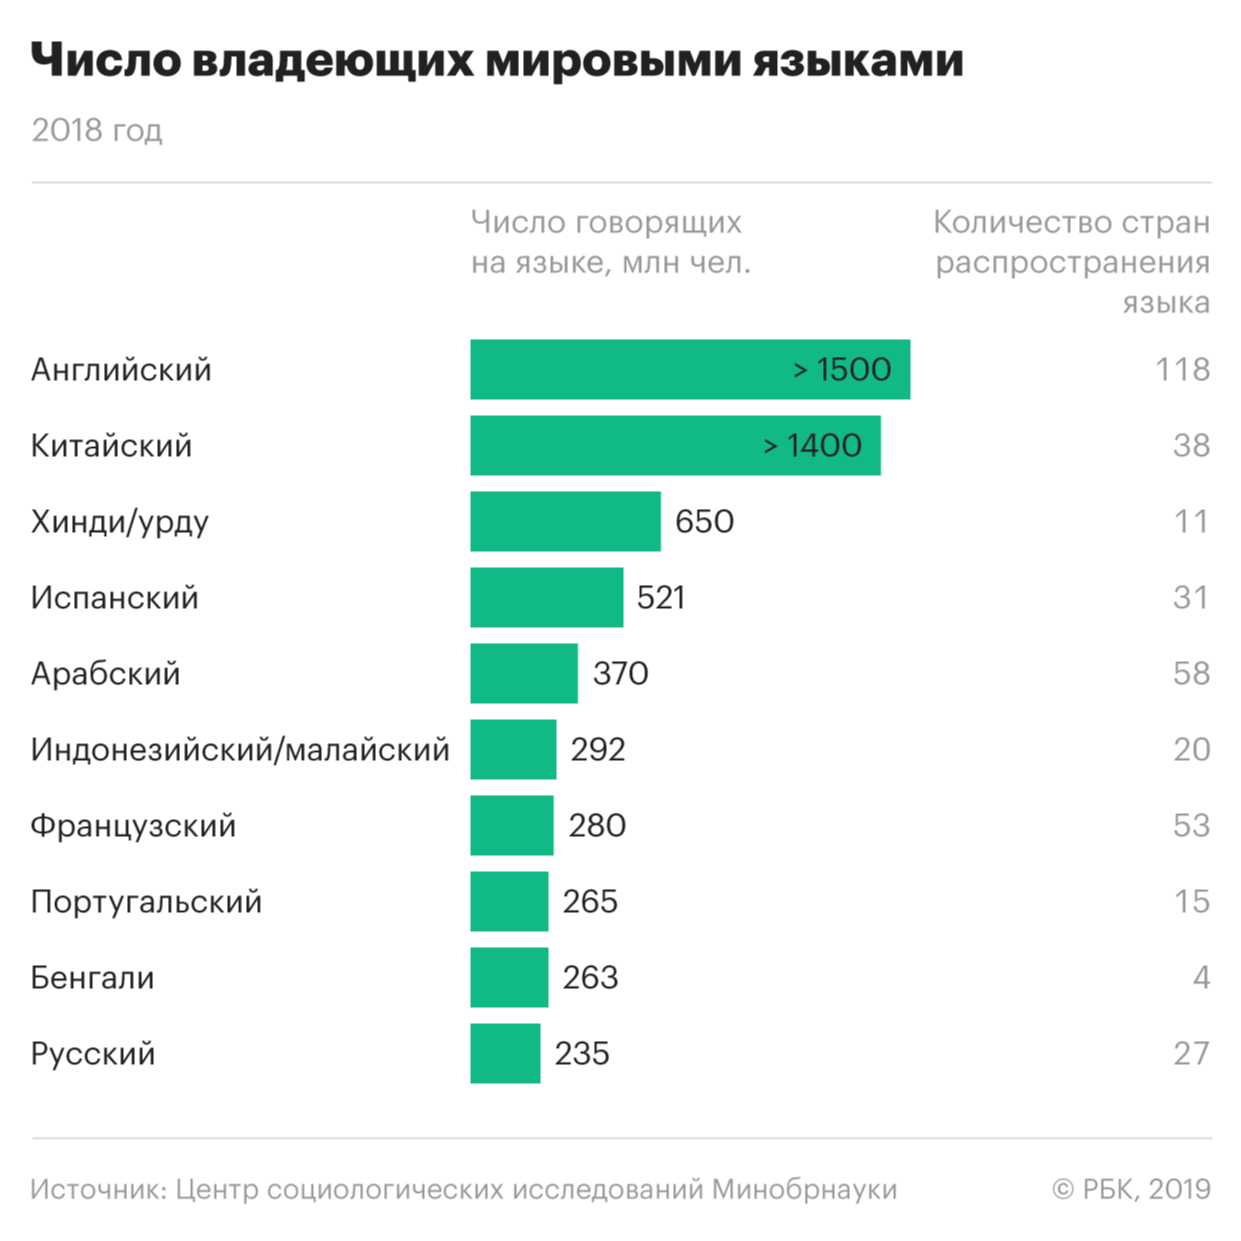 Число изучающих русский язык в мире упало в 2 раза со времен распада СССР